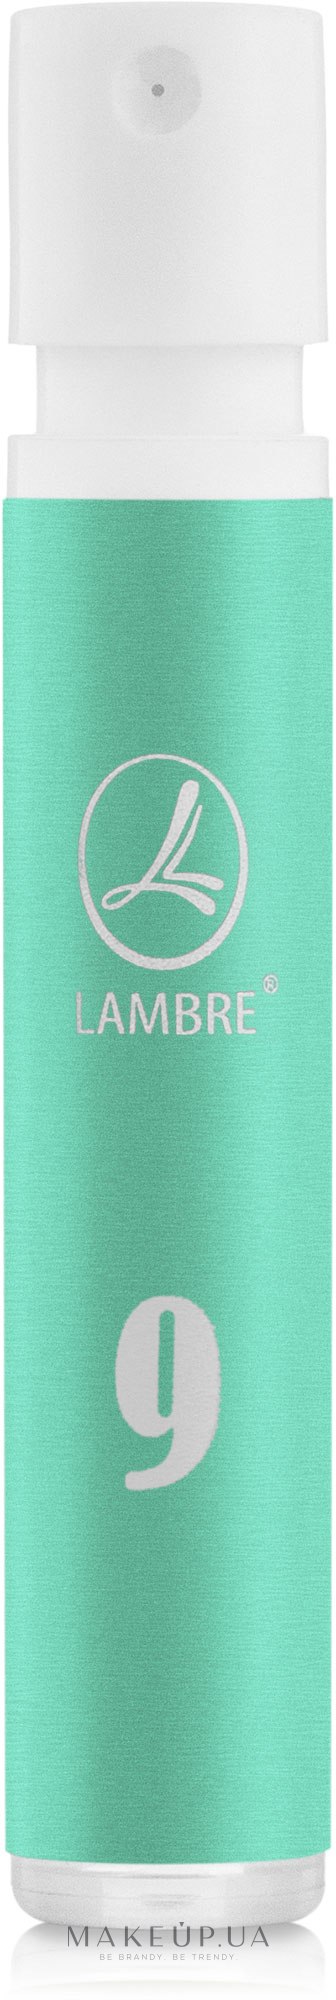 Lambre № 9 - Парфуми (пробник) — фото 1.2ml